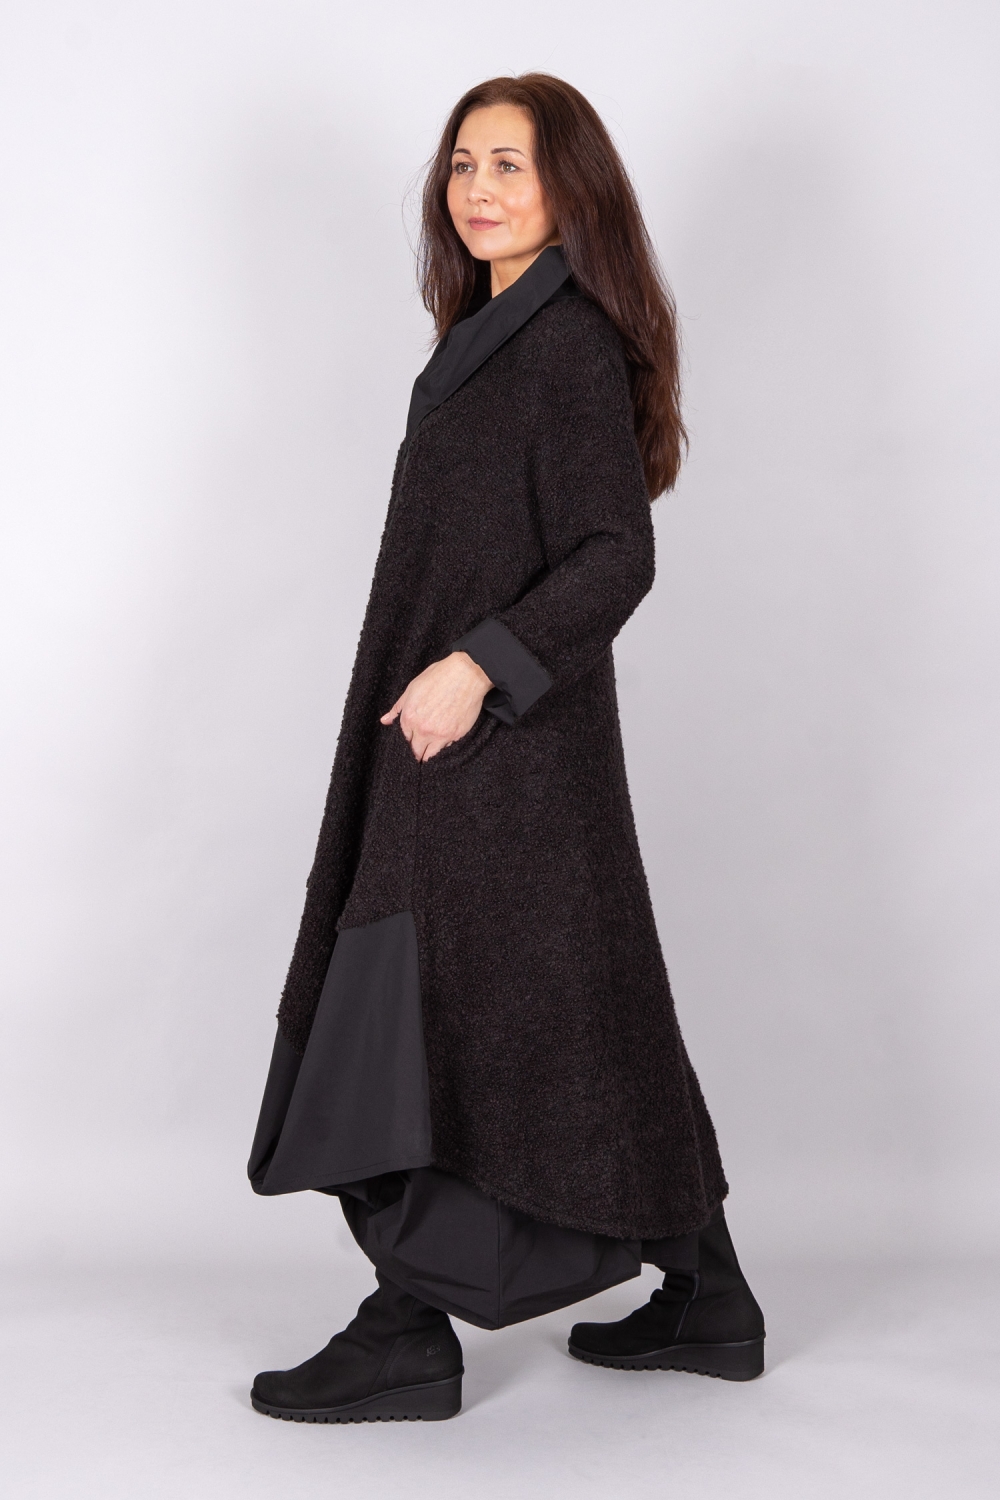 Ellipse Kleid in A-Form aus Bouclé kombiniert mit Taft in schwarz